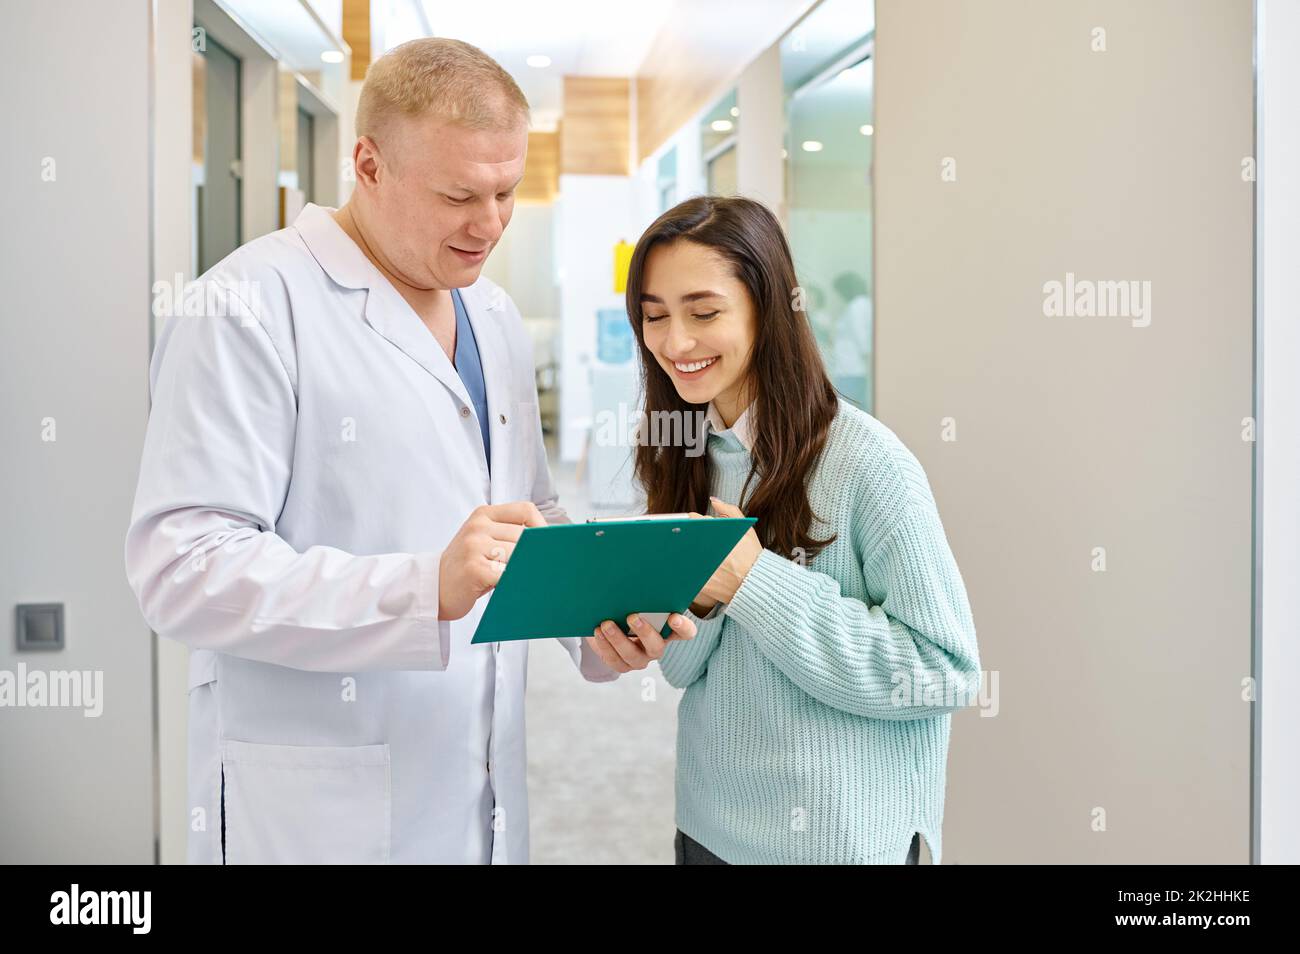 Arzt und Patient besprechen die medizinischen Untersuchungsergebnisse Stockfoto